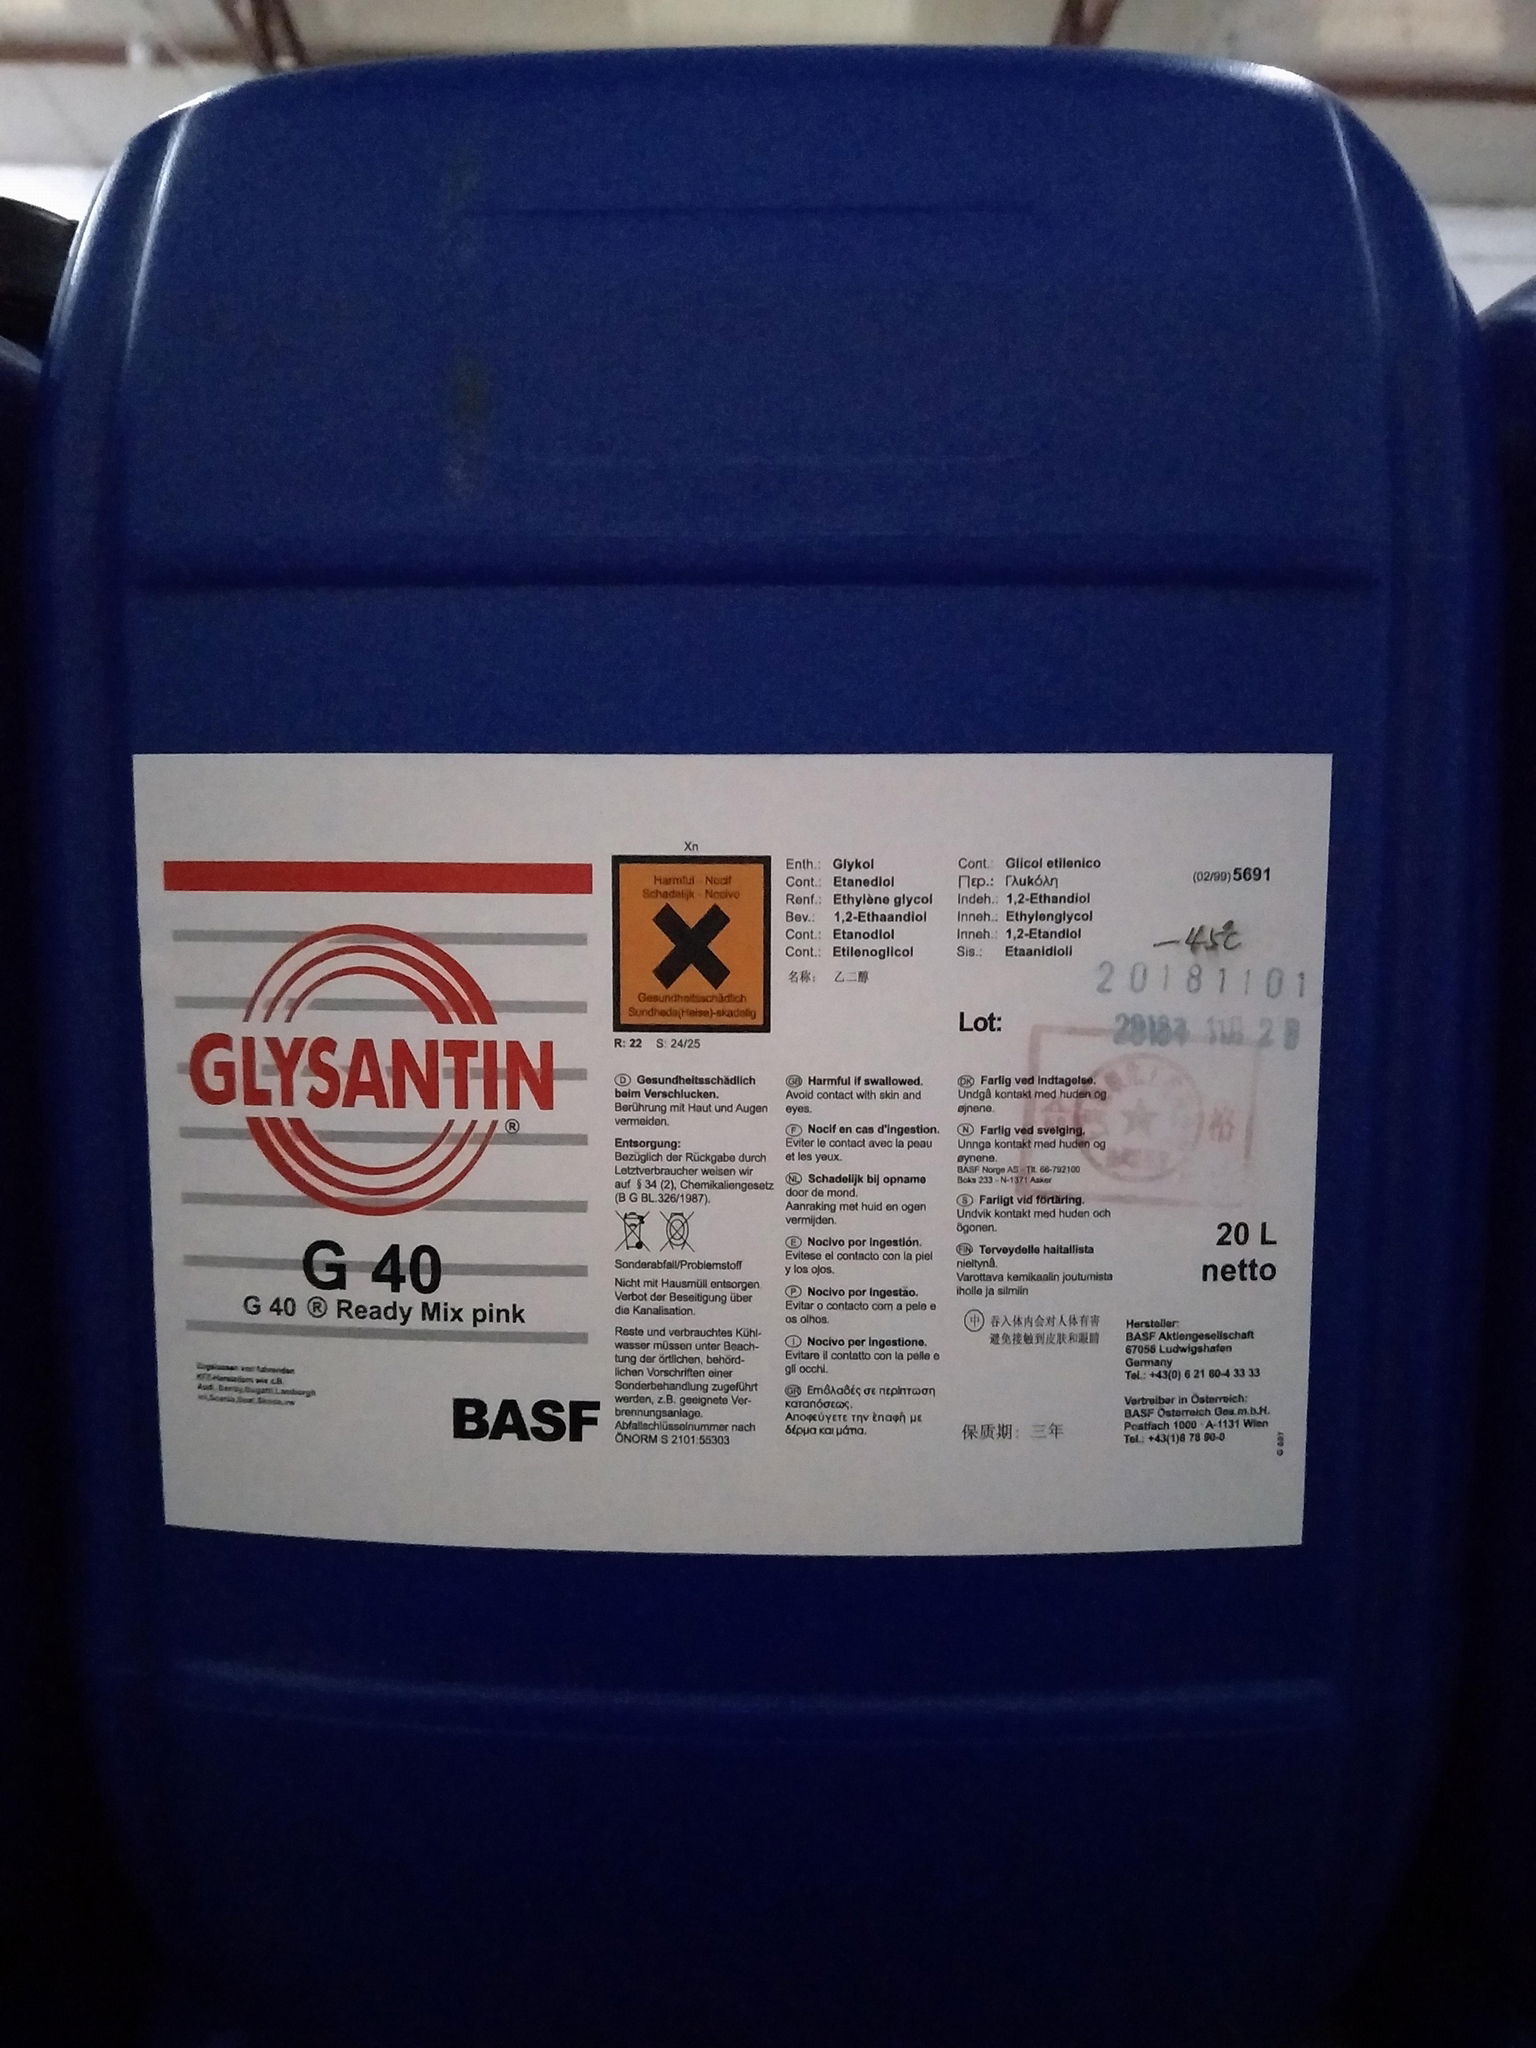 GLYSANTIN G40丨G40 Ready Mix pink